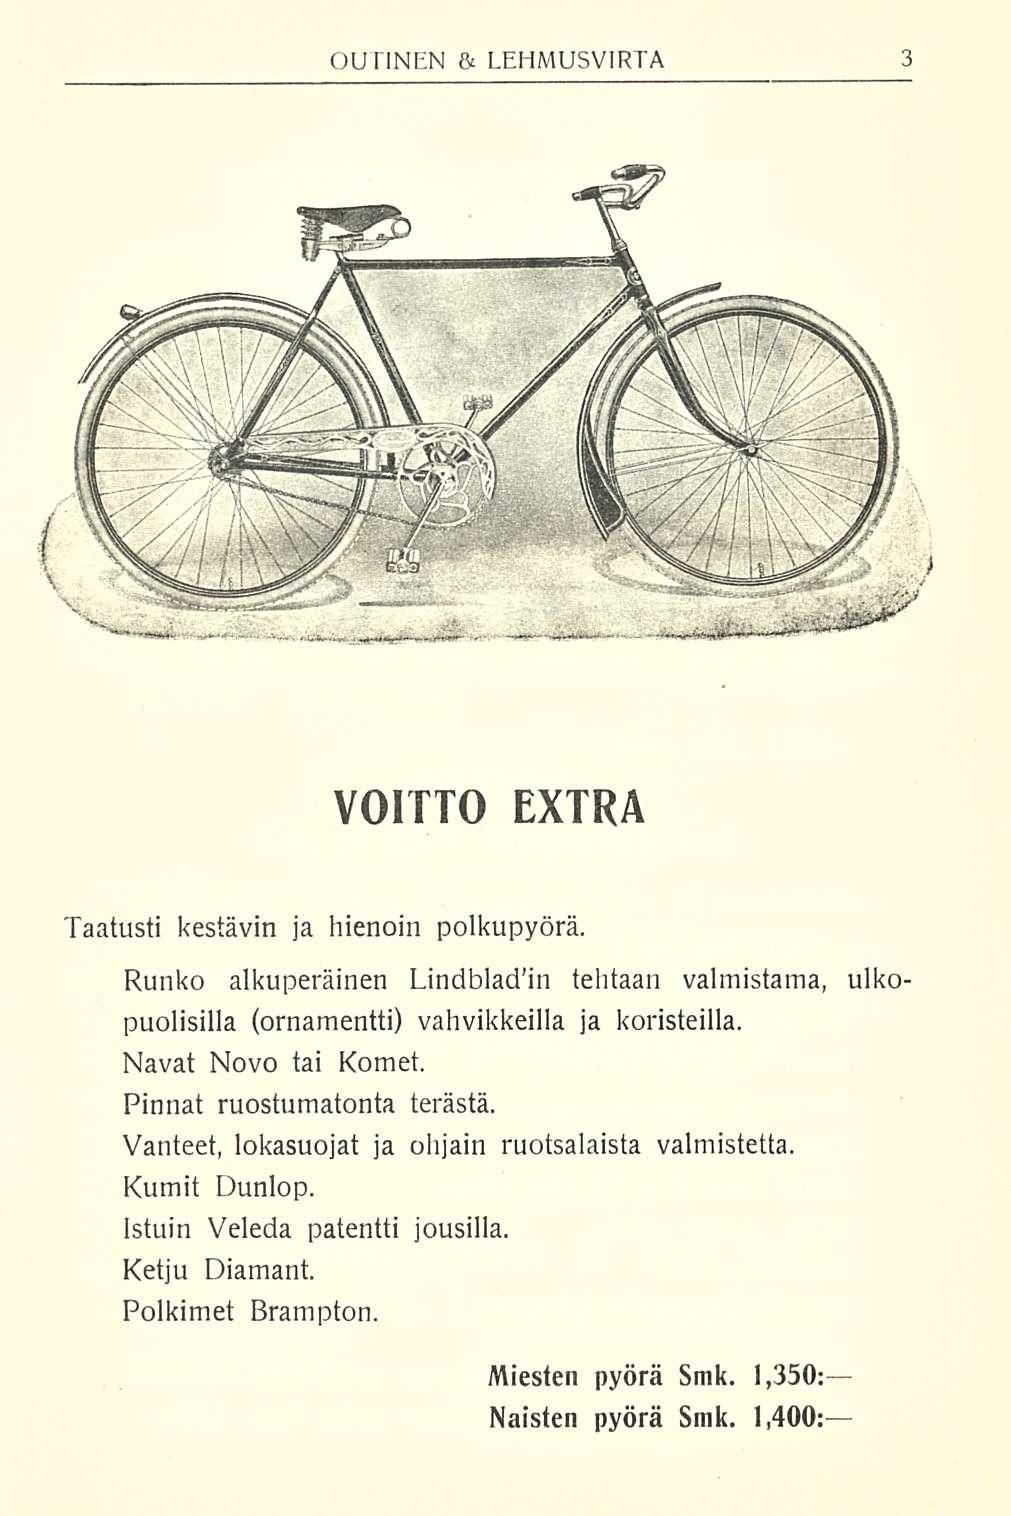 VOITTO EXTRA Taatusti kestävin ja hienoin polkupyörä. Runko alkuperäinen Lindbladin tehtaan valmistama, uiko puolisilla (ornamentti) vahvikkeilla ja koristeilla. Navat Novo tai Komet.